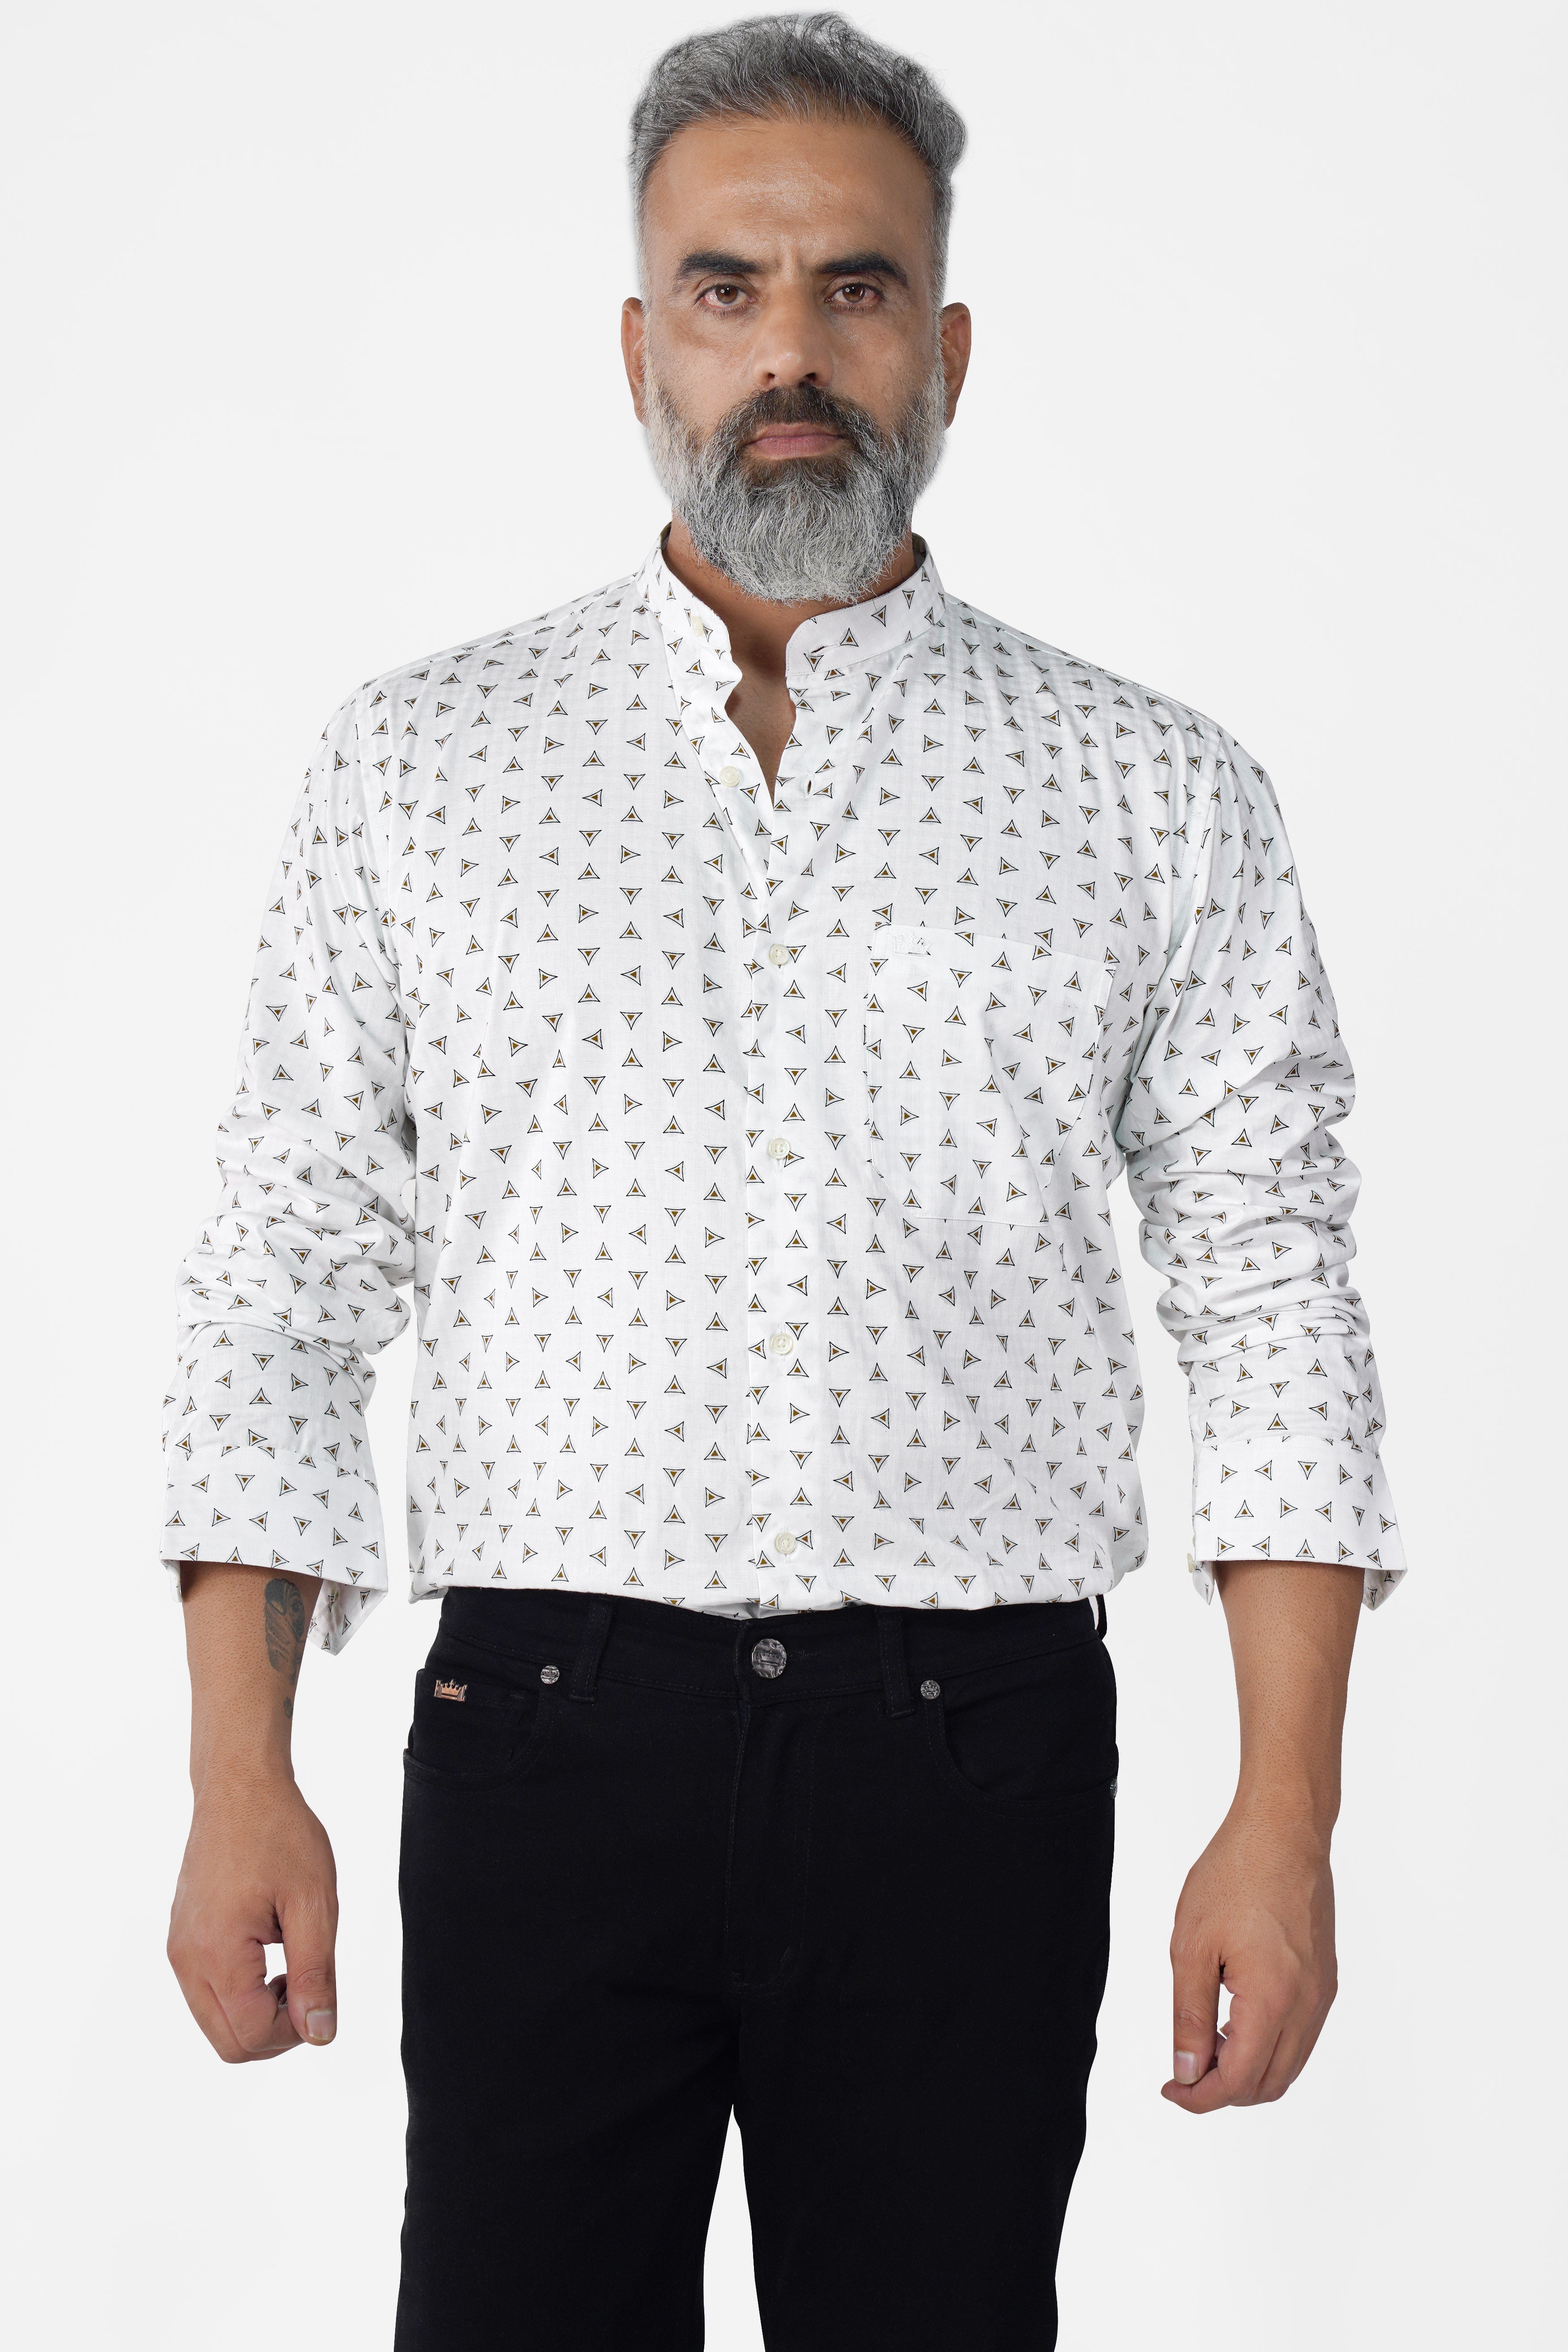 Bright White Printed Super Soft Premium Cotton Shirt